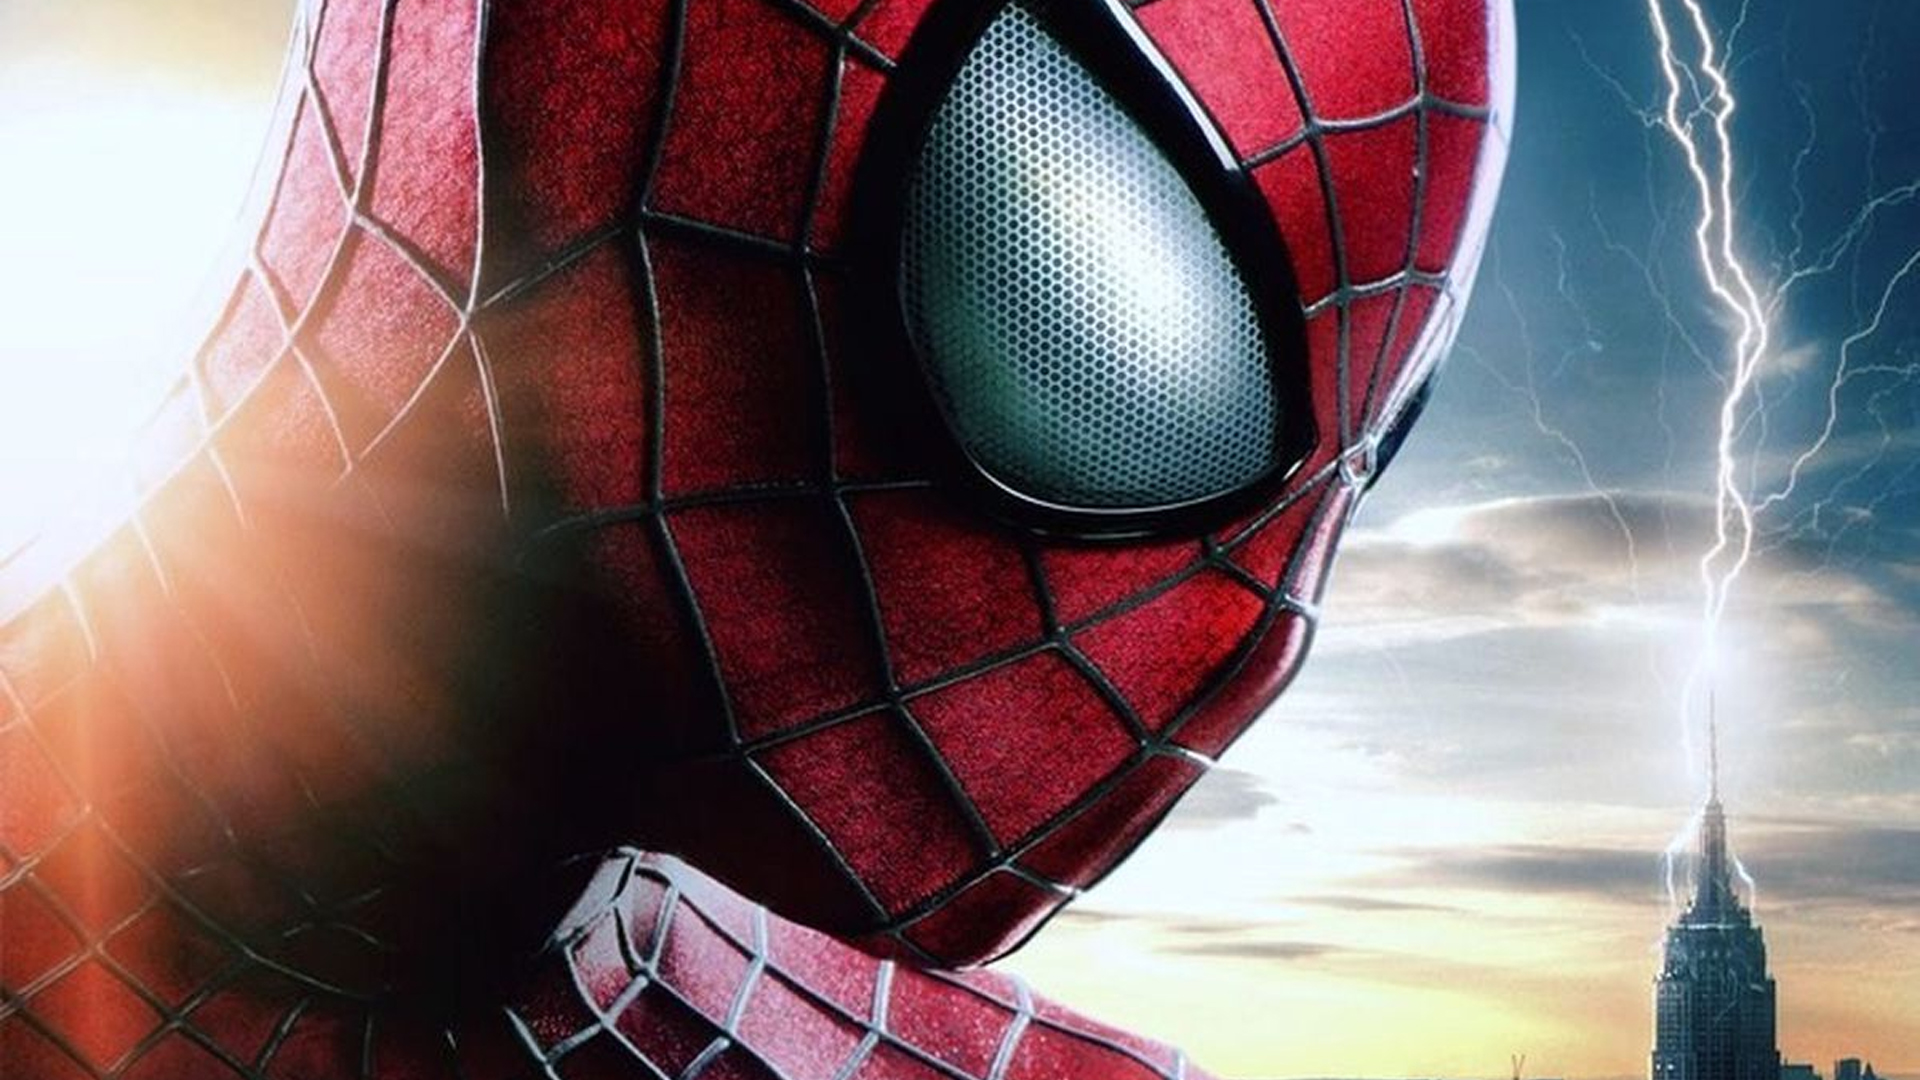 Steam Workshop::Marvels Spider-Man 2